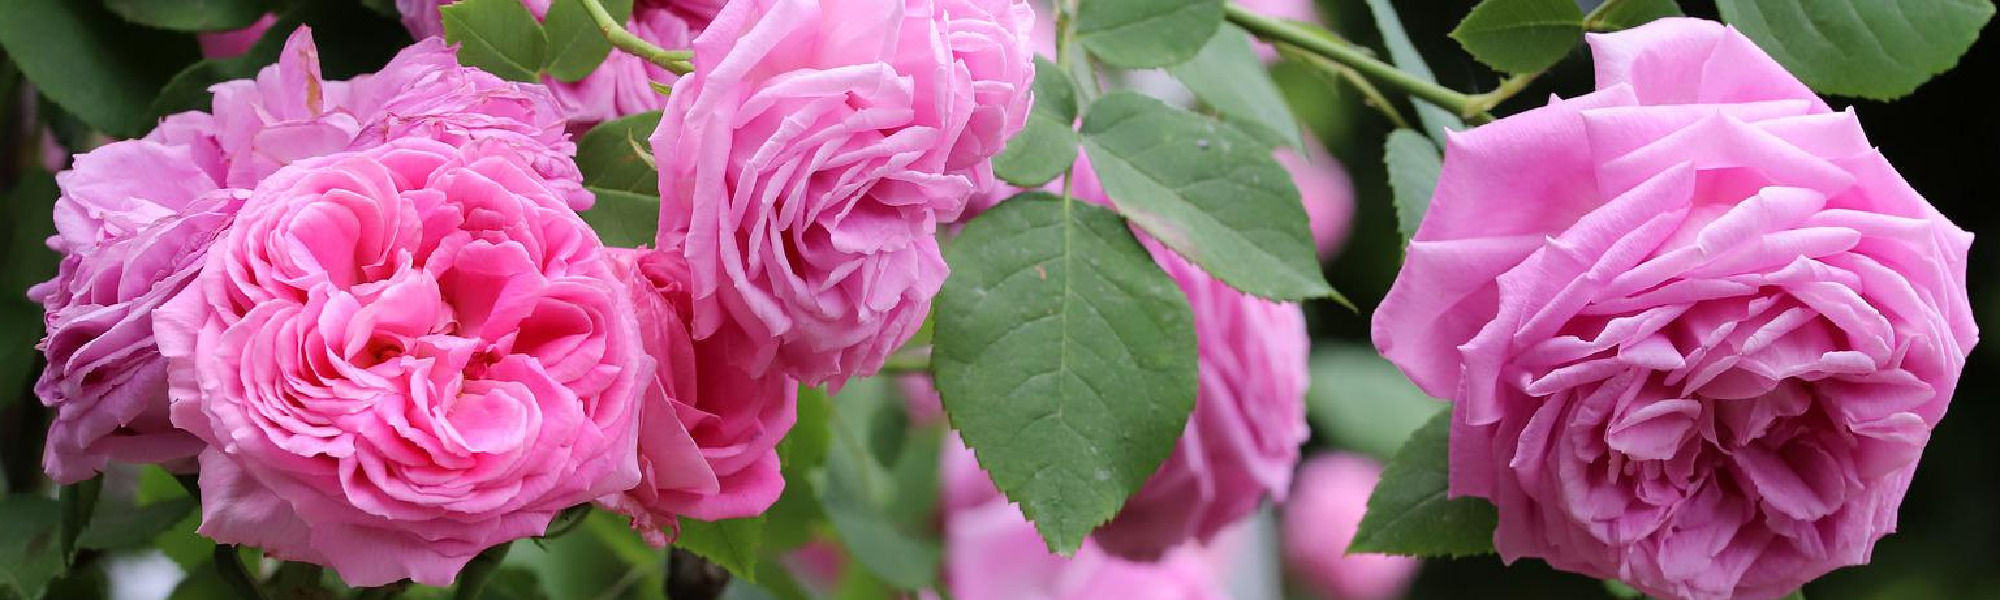 Gartentipps im Juli: Letzte Düngung für Rosen